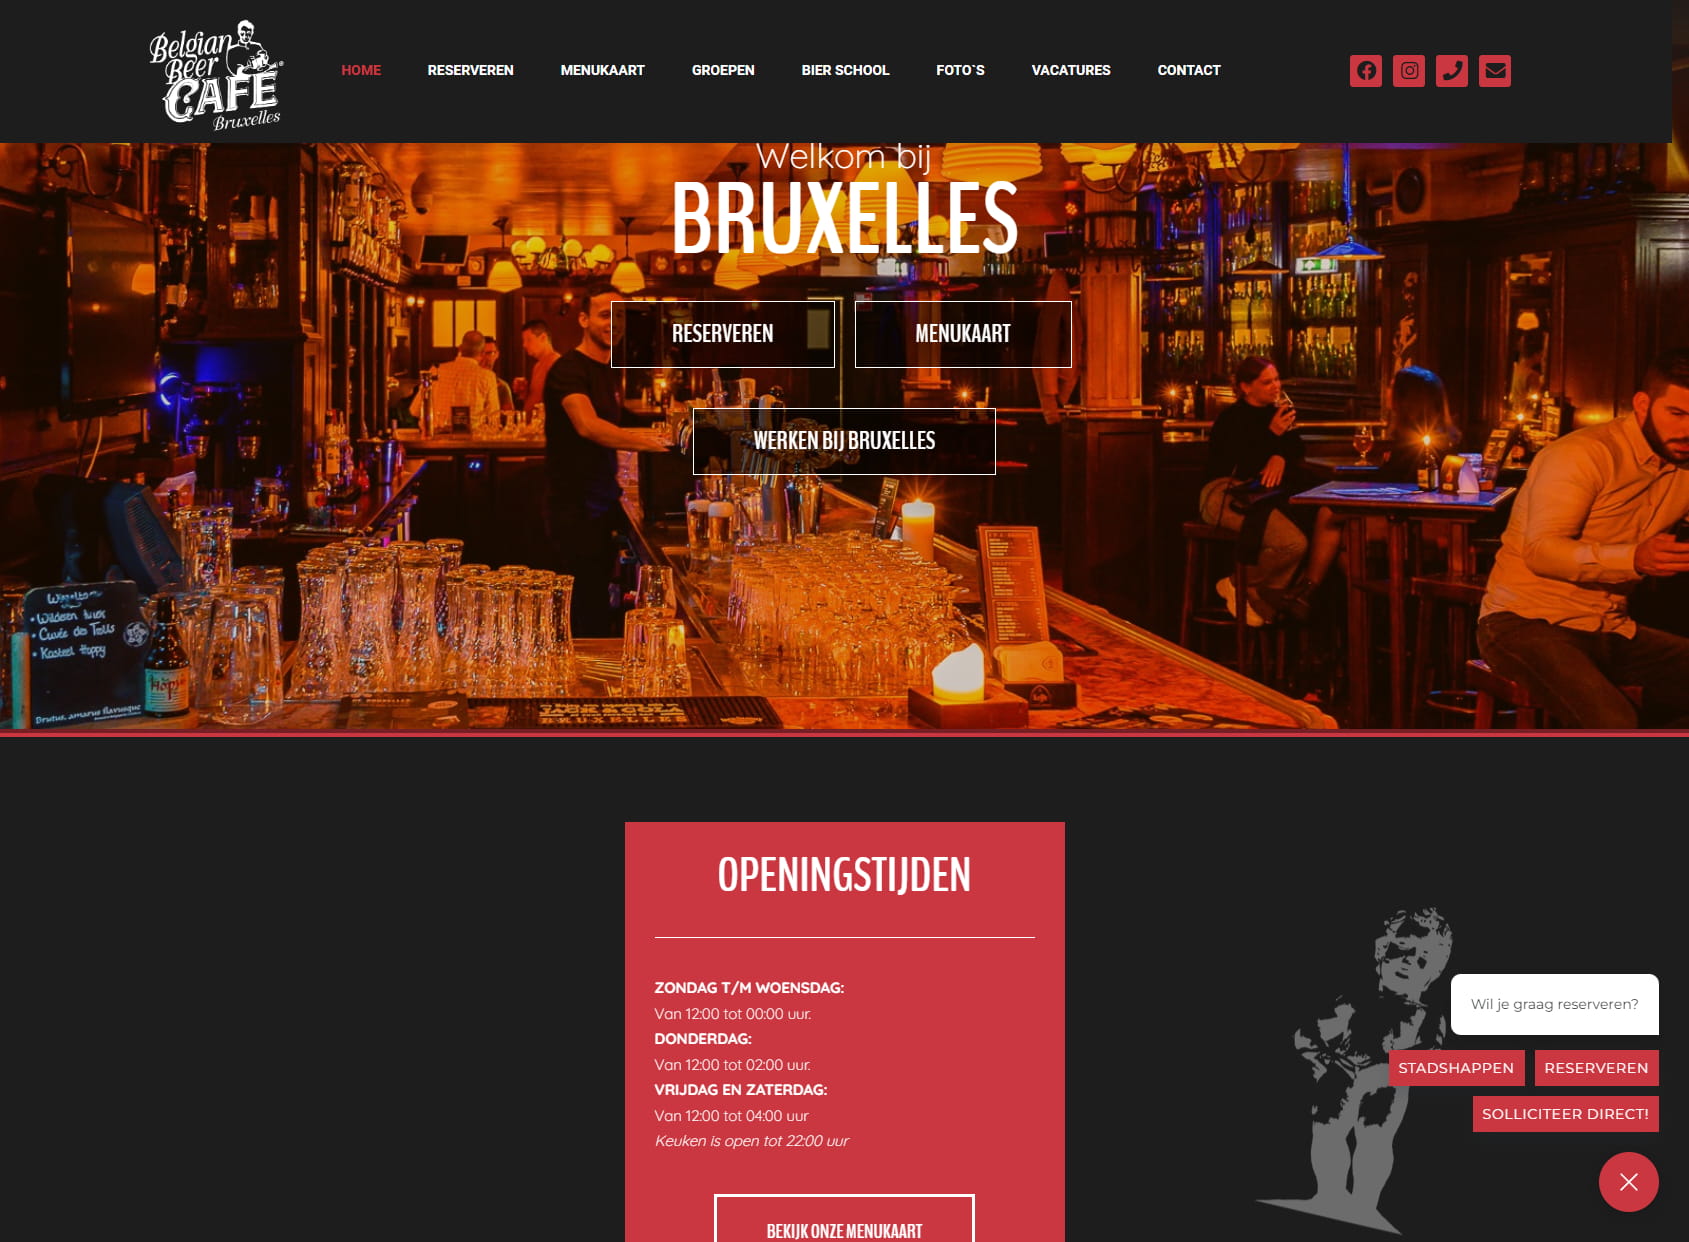 Café Bruxelles